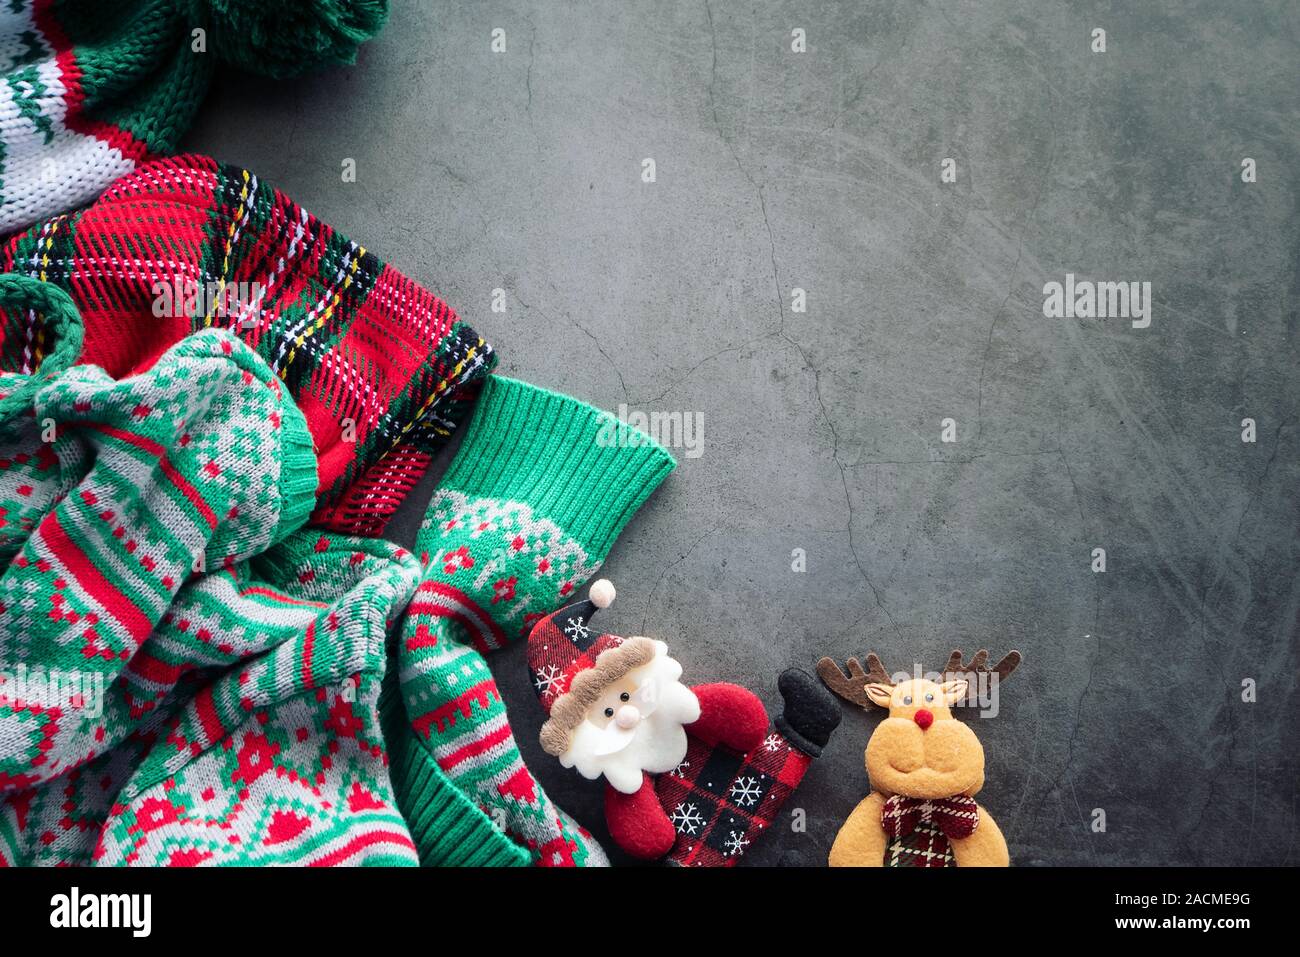 Suéter verde y rojo manta escocesa acostado en el fondo de cemento con un muñeco de Santa Claus y renos de navidad con espacio de copia Foto de stock